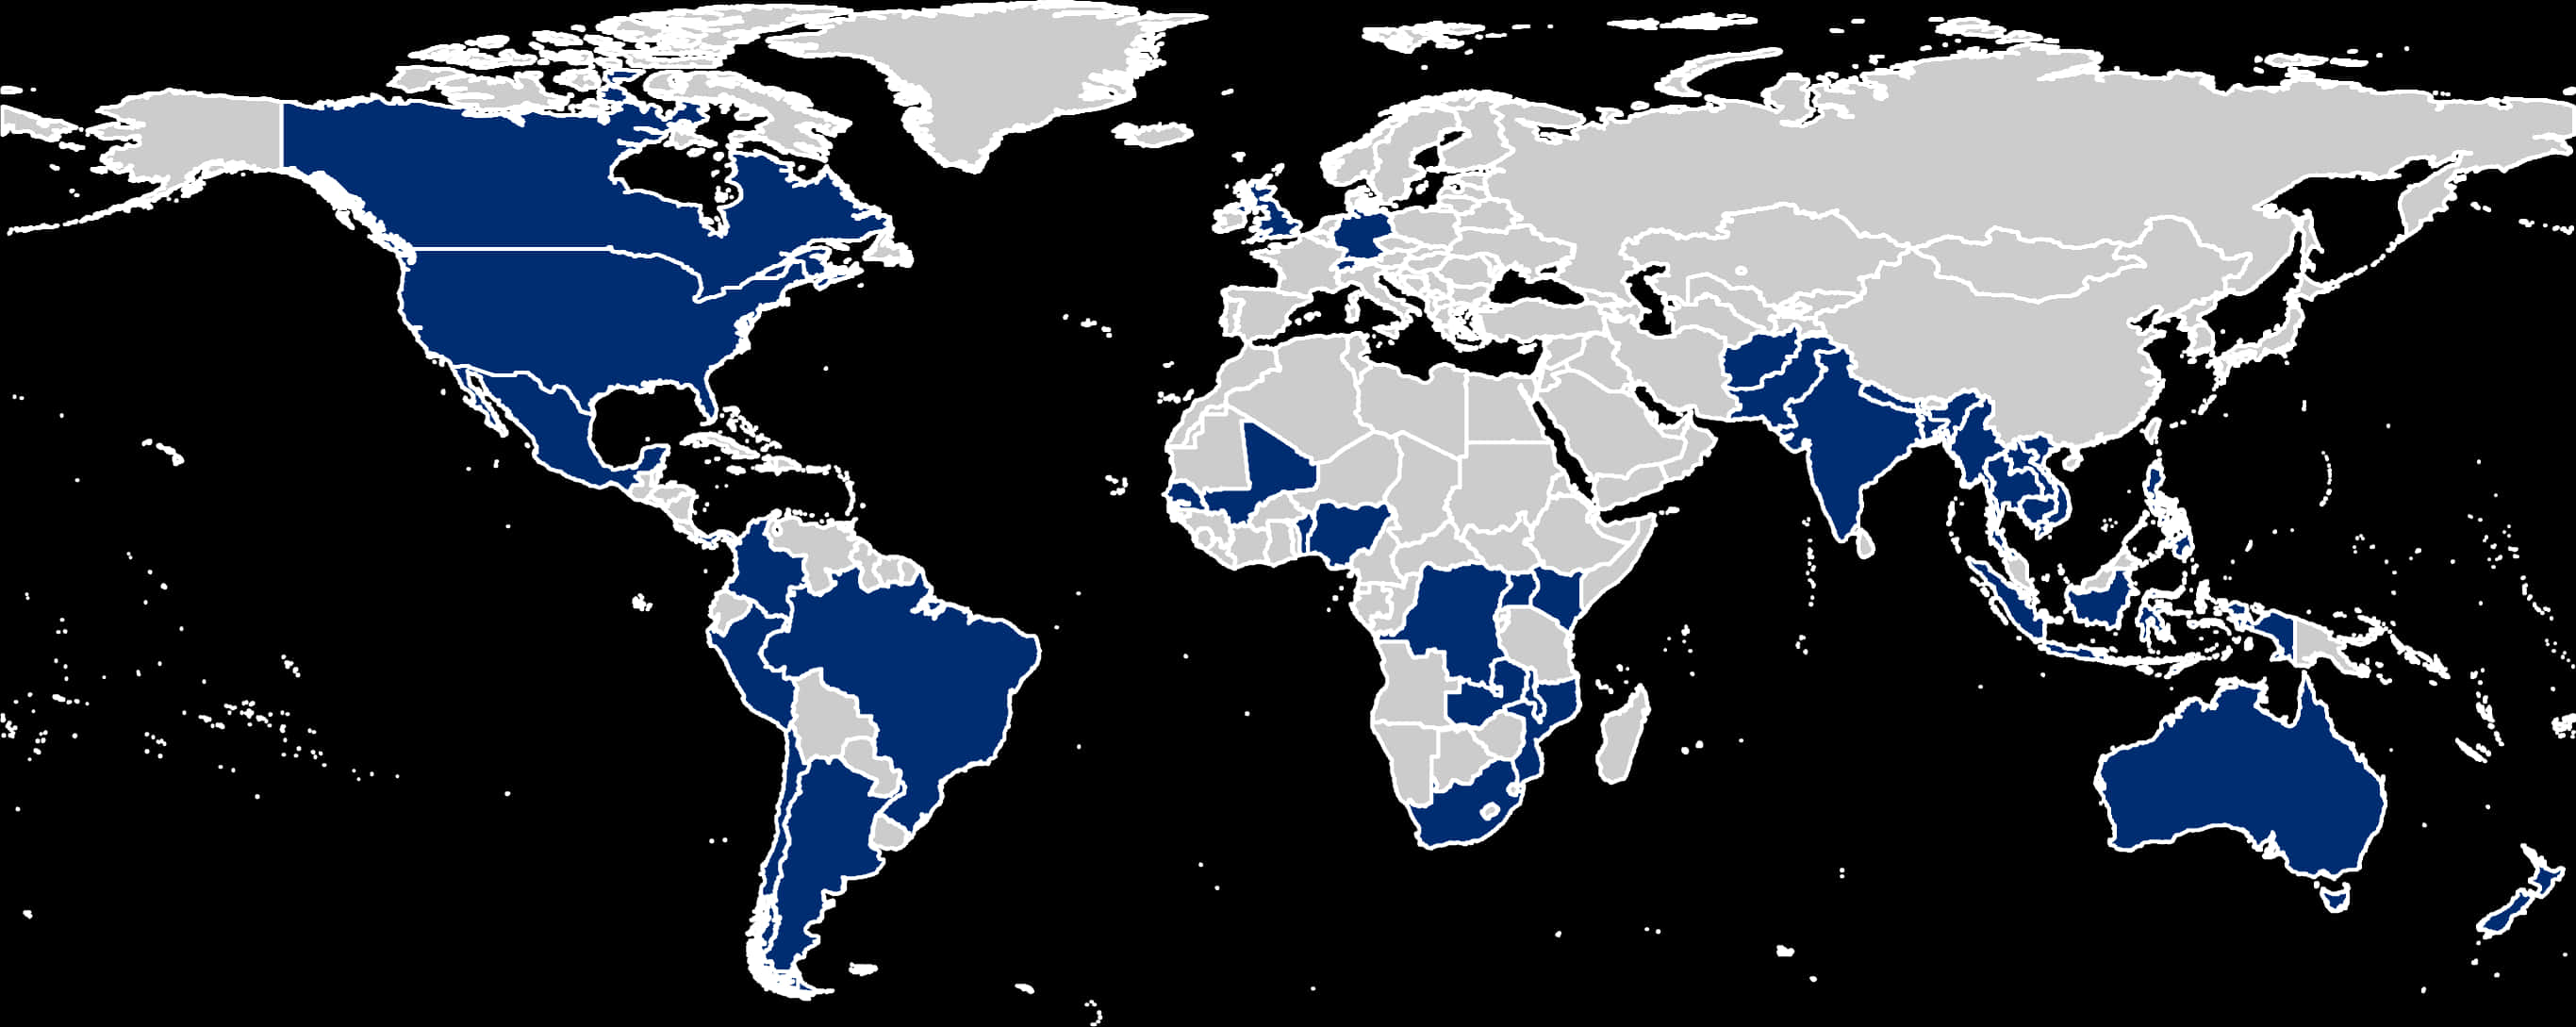 World Map Spanish Speaking Countries